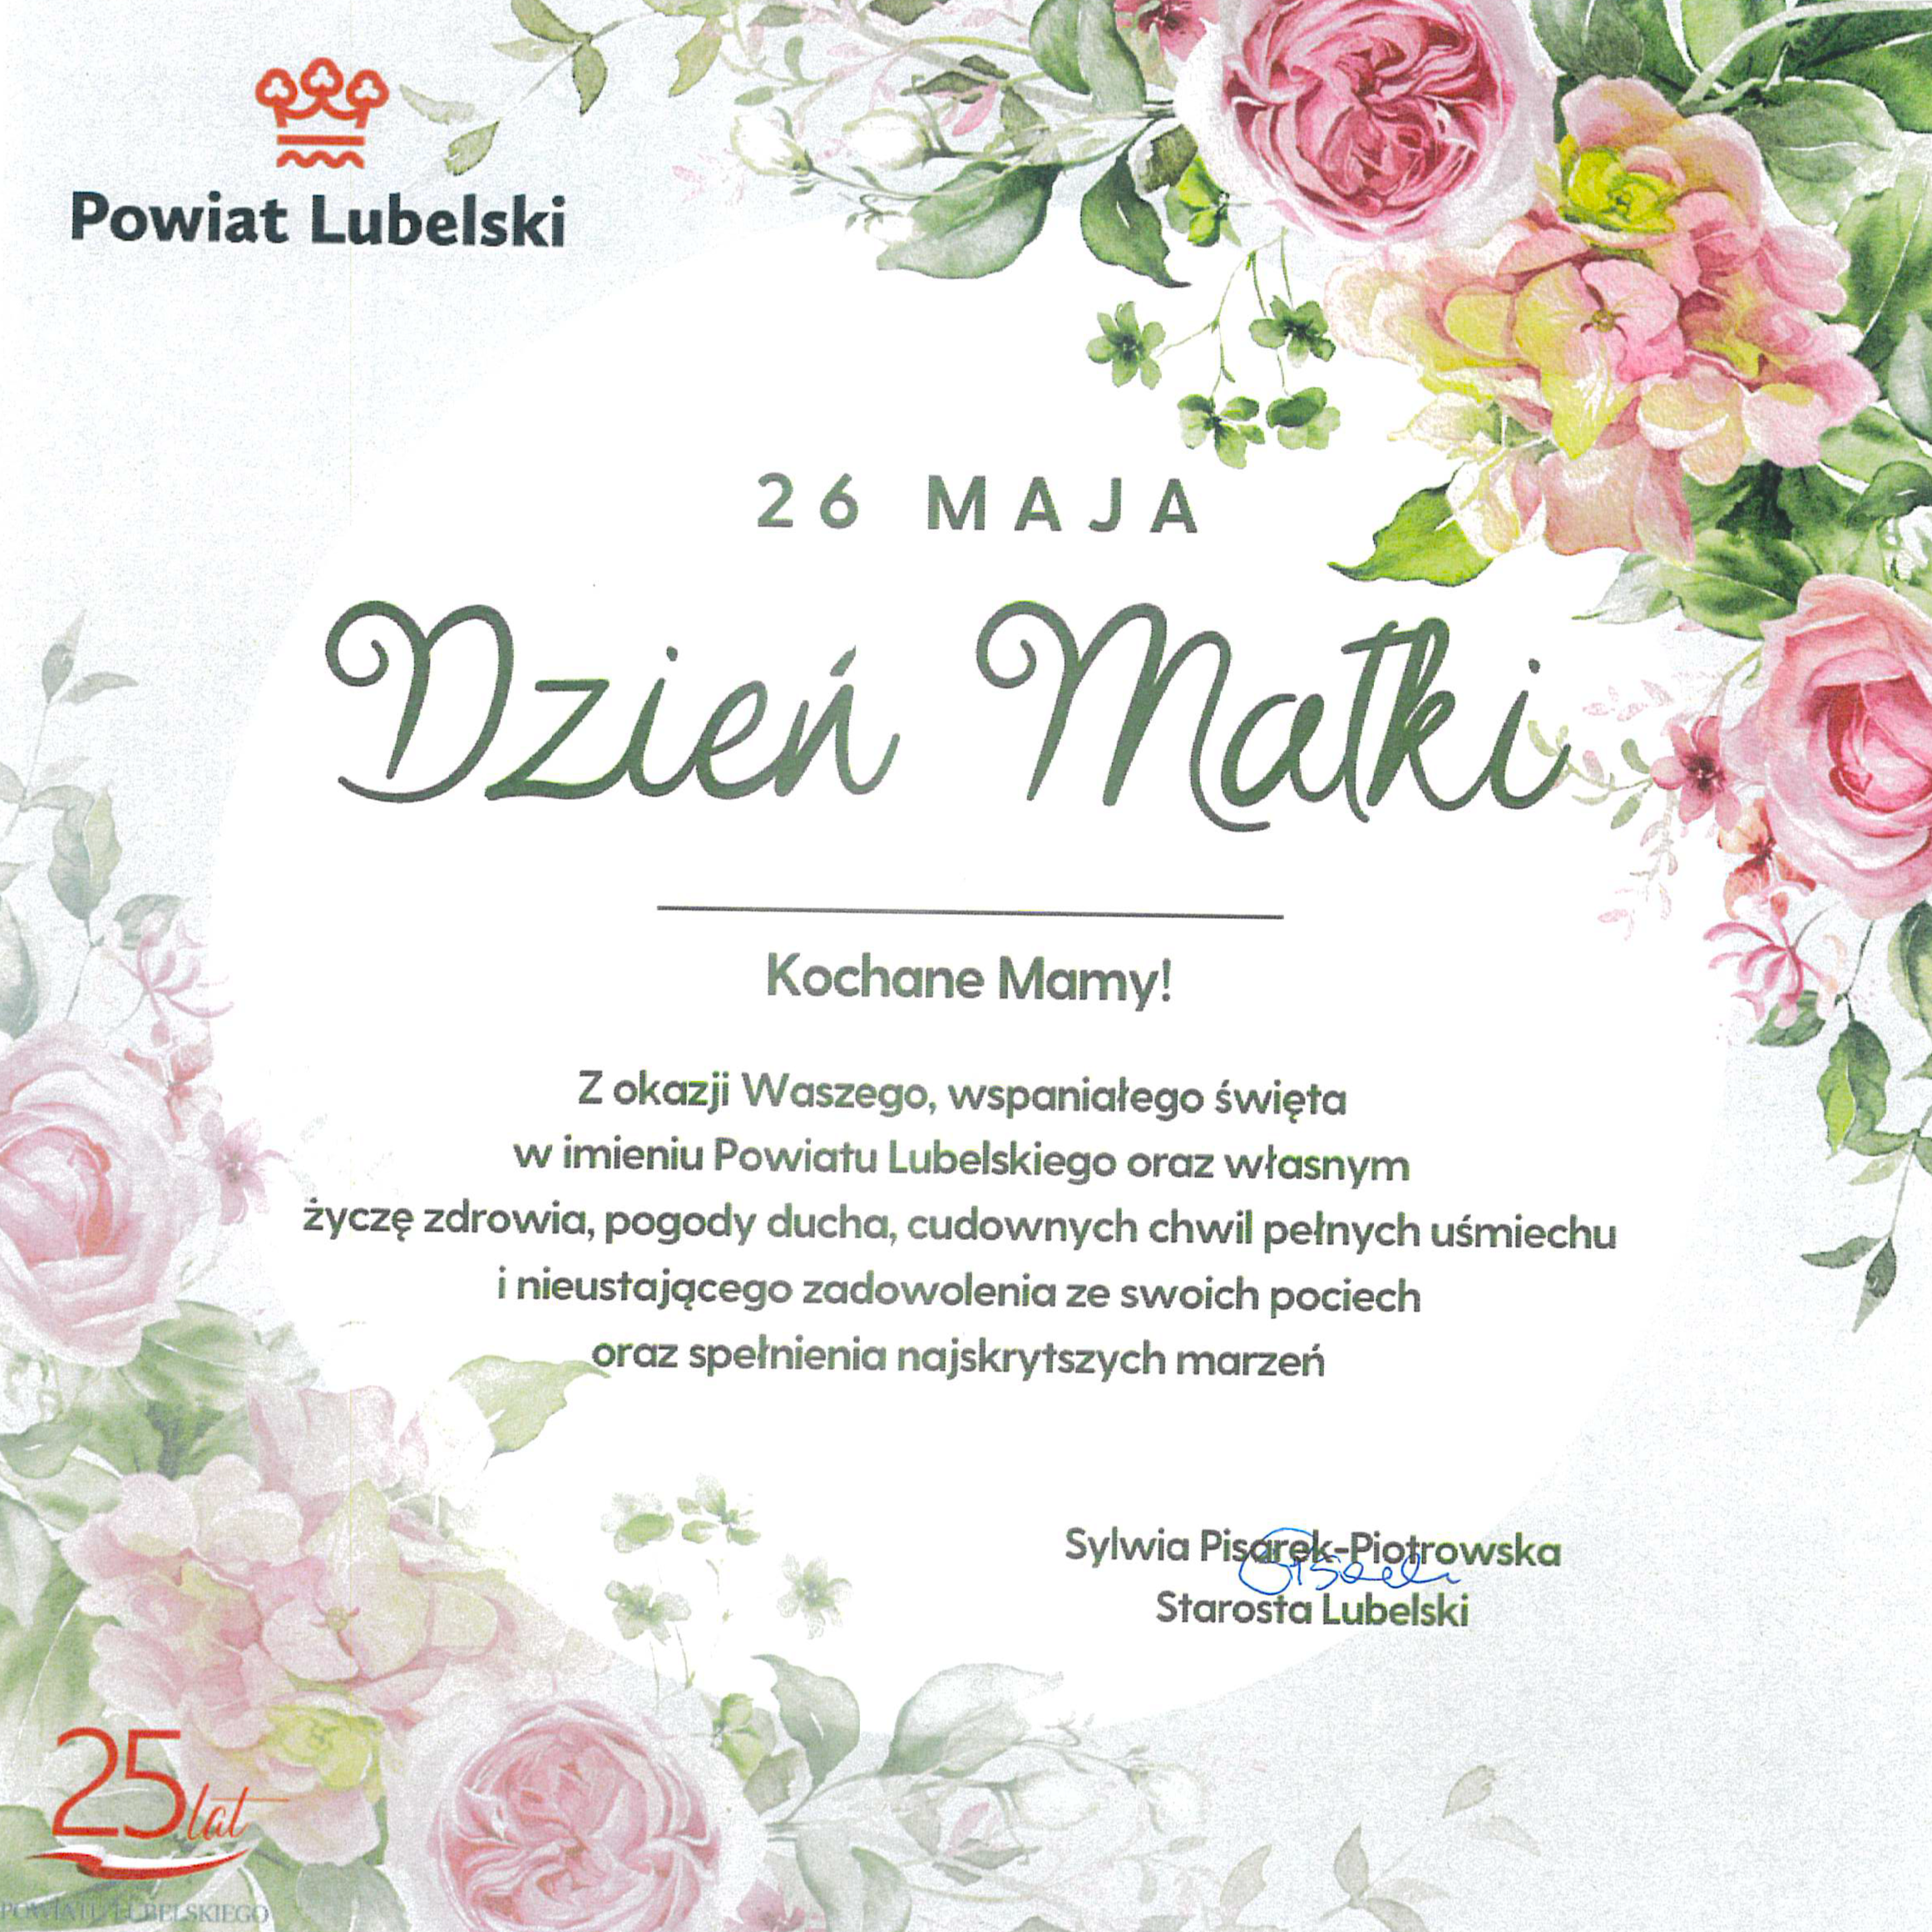 Grafika okolicznościowa z napisem "Dzień Matki, 26 Maja" oraz życzeniami, otoczona rysunkami róż i zielonymi liśćmi. U dołu logo Powiatu Lubelskiego i podpis Starosty.